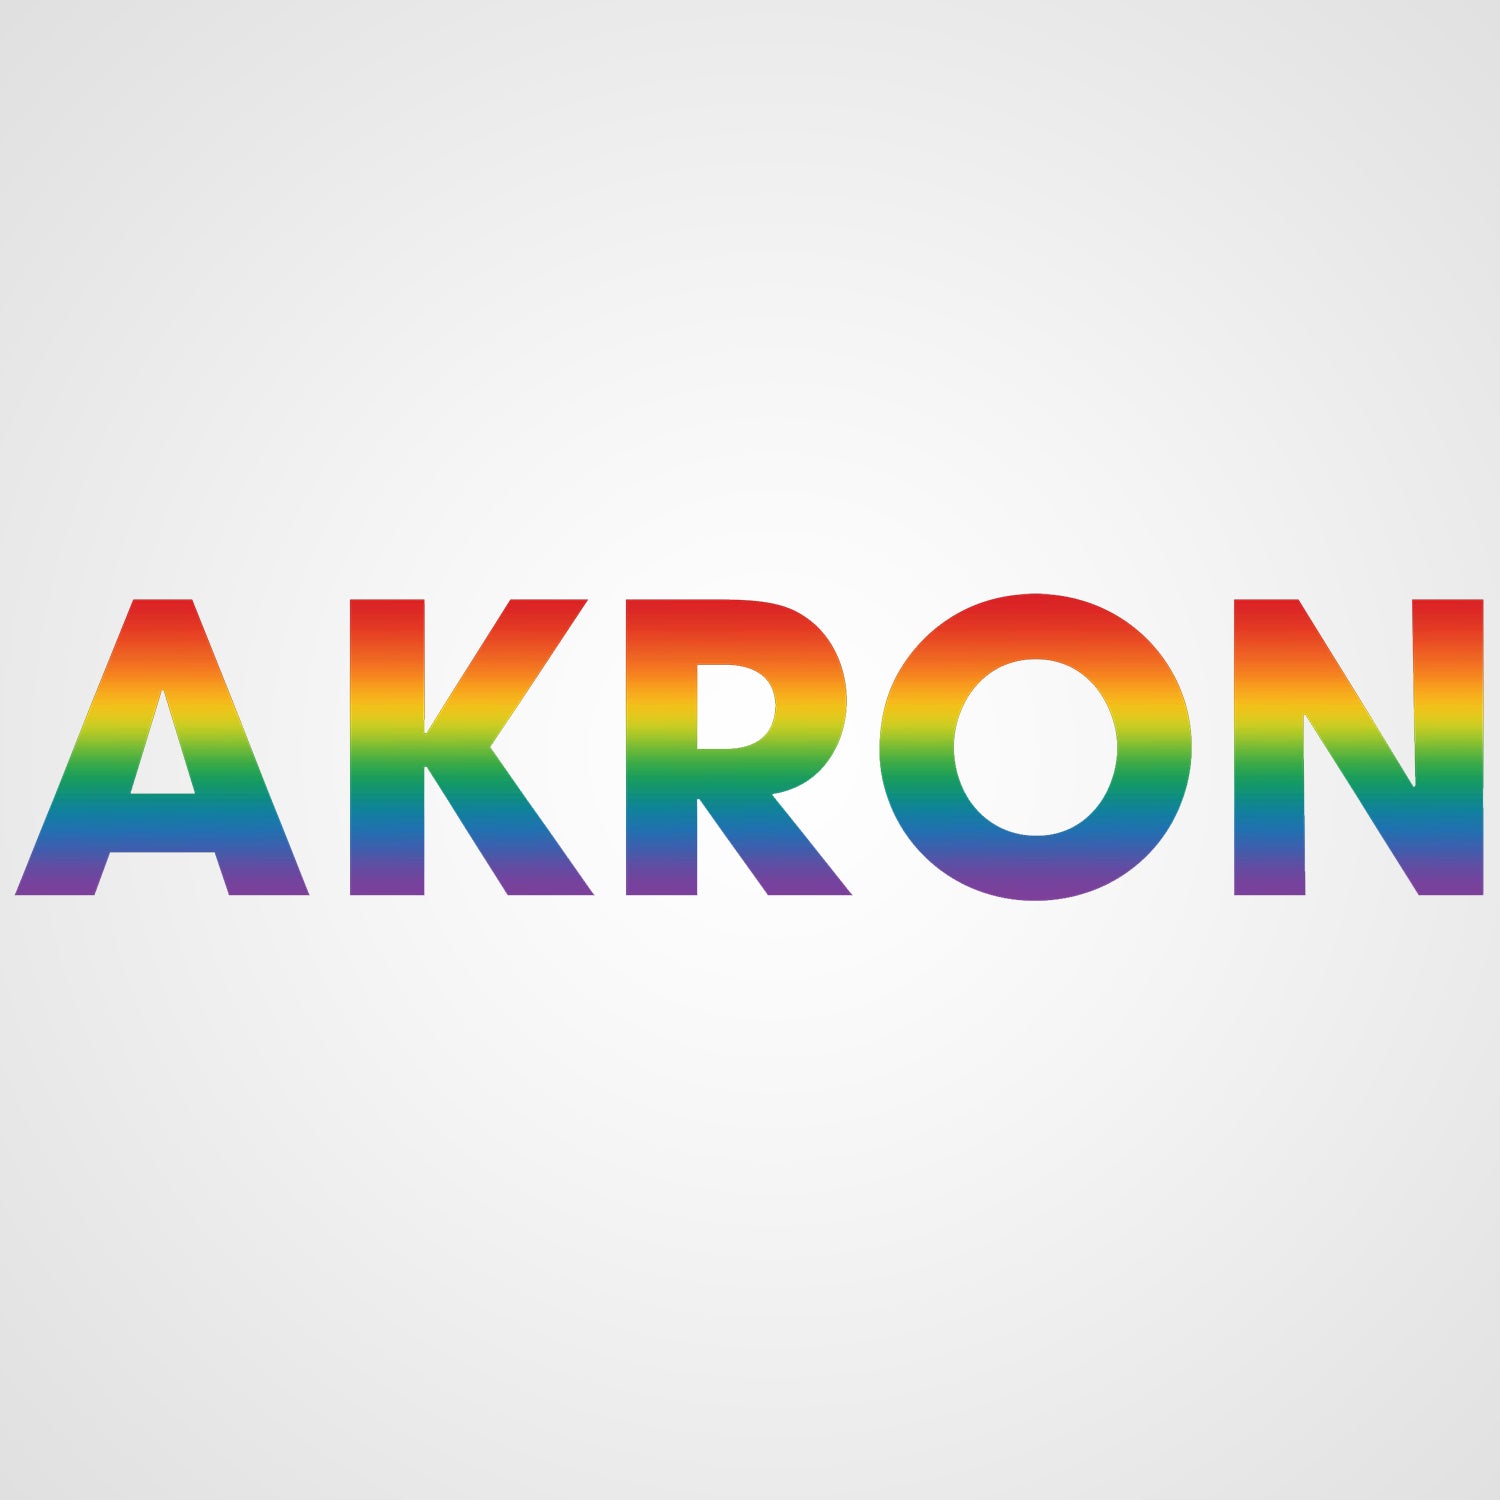 AKRON Pride